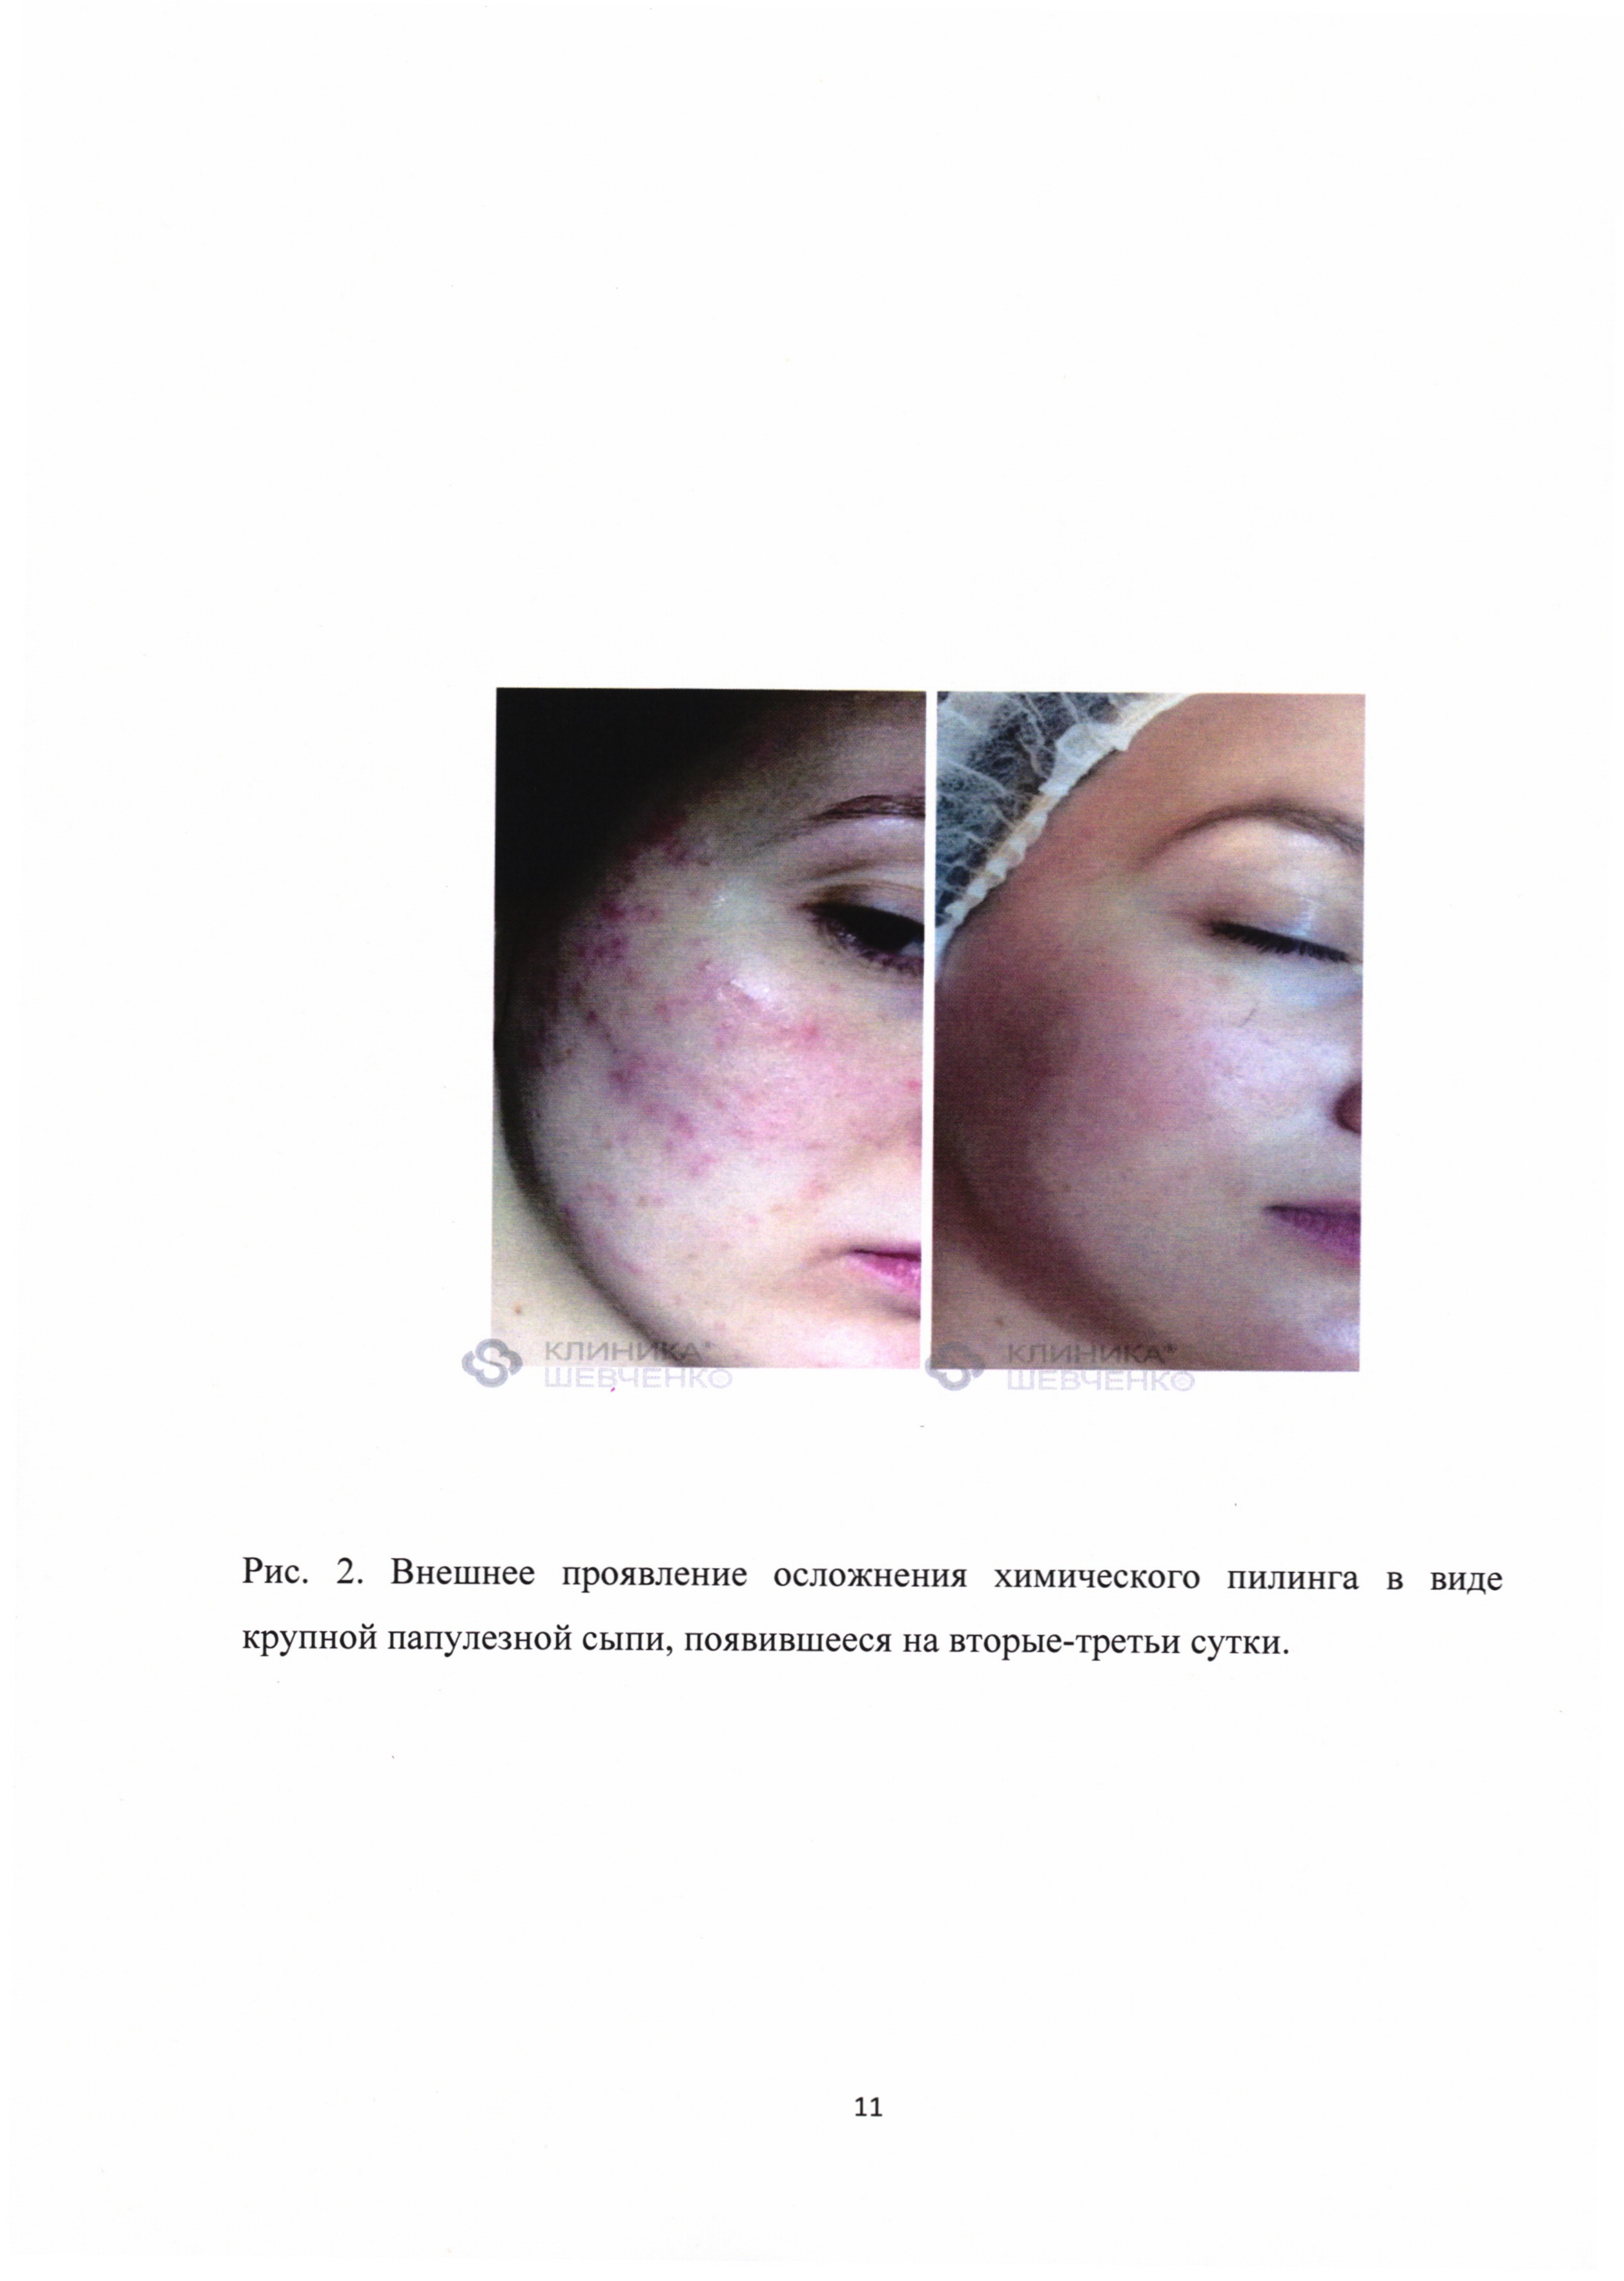 Способ профилактики реинфицирования травмированной поверхности кожи у пациентов при проведении косметической процедуры пилинга